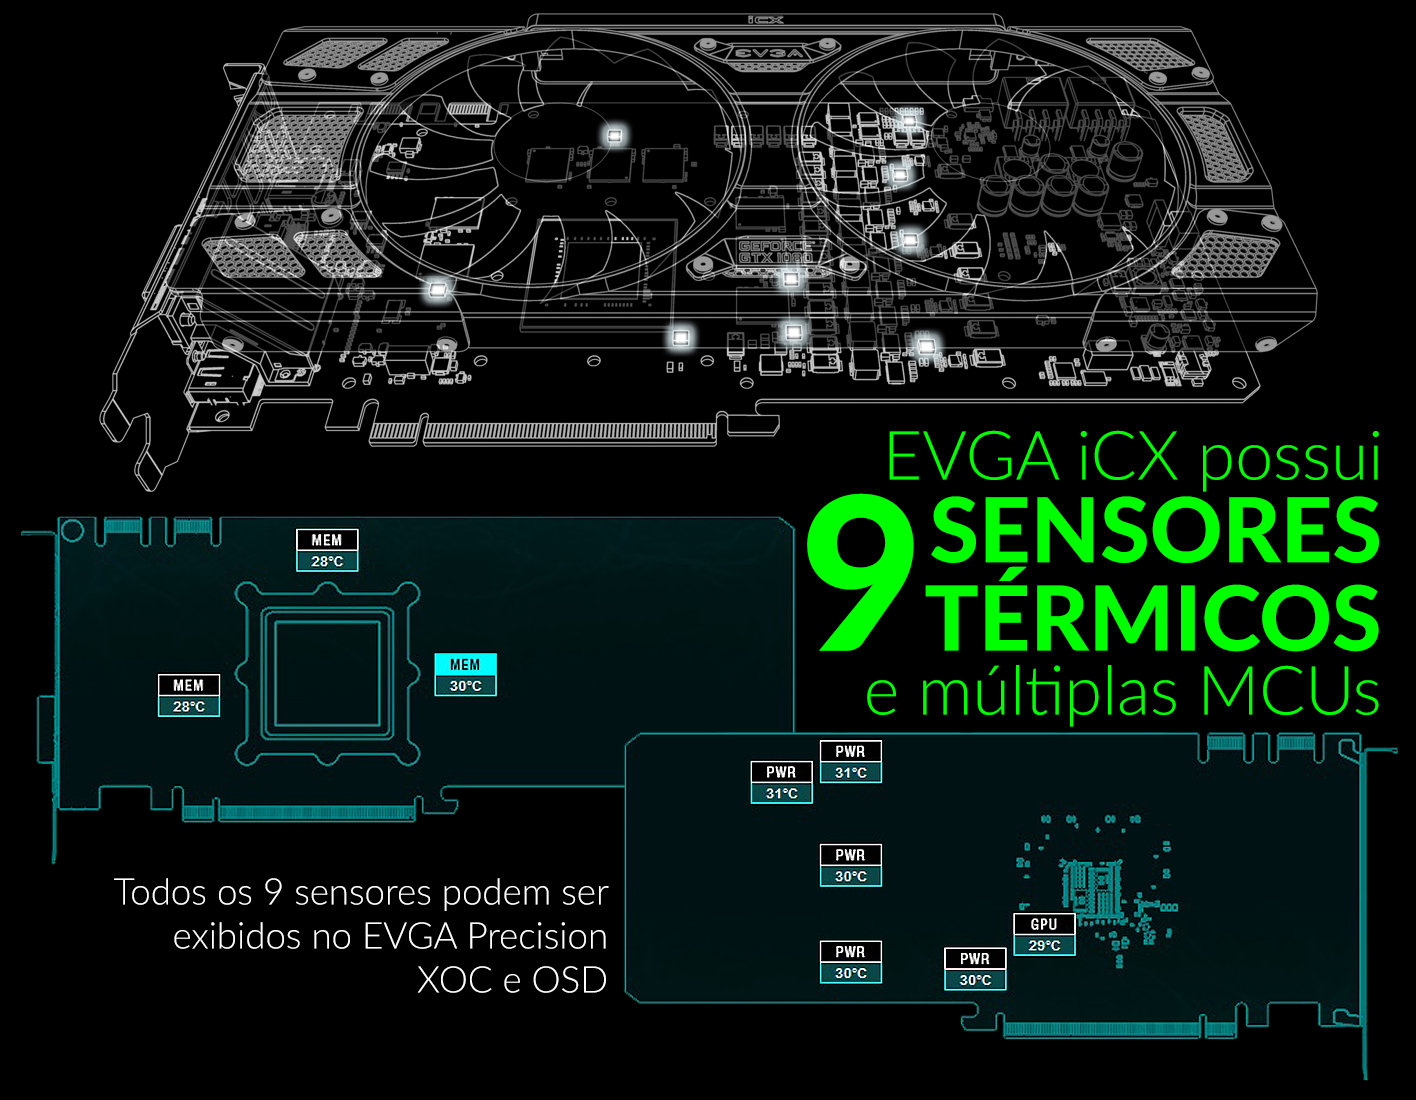 9 Thermal Sensors